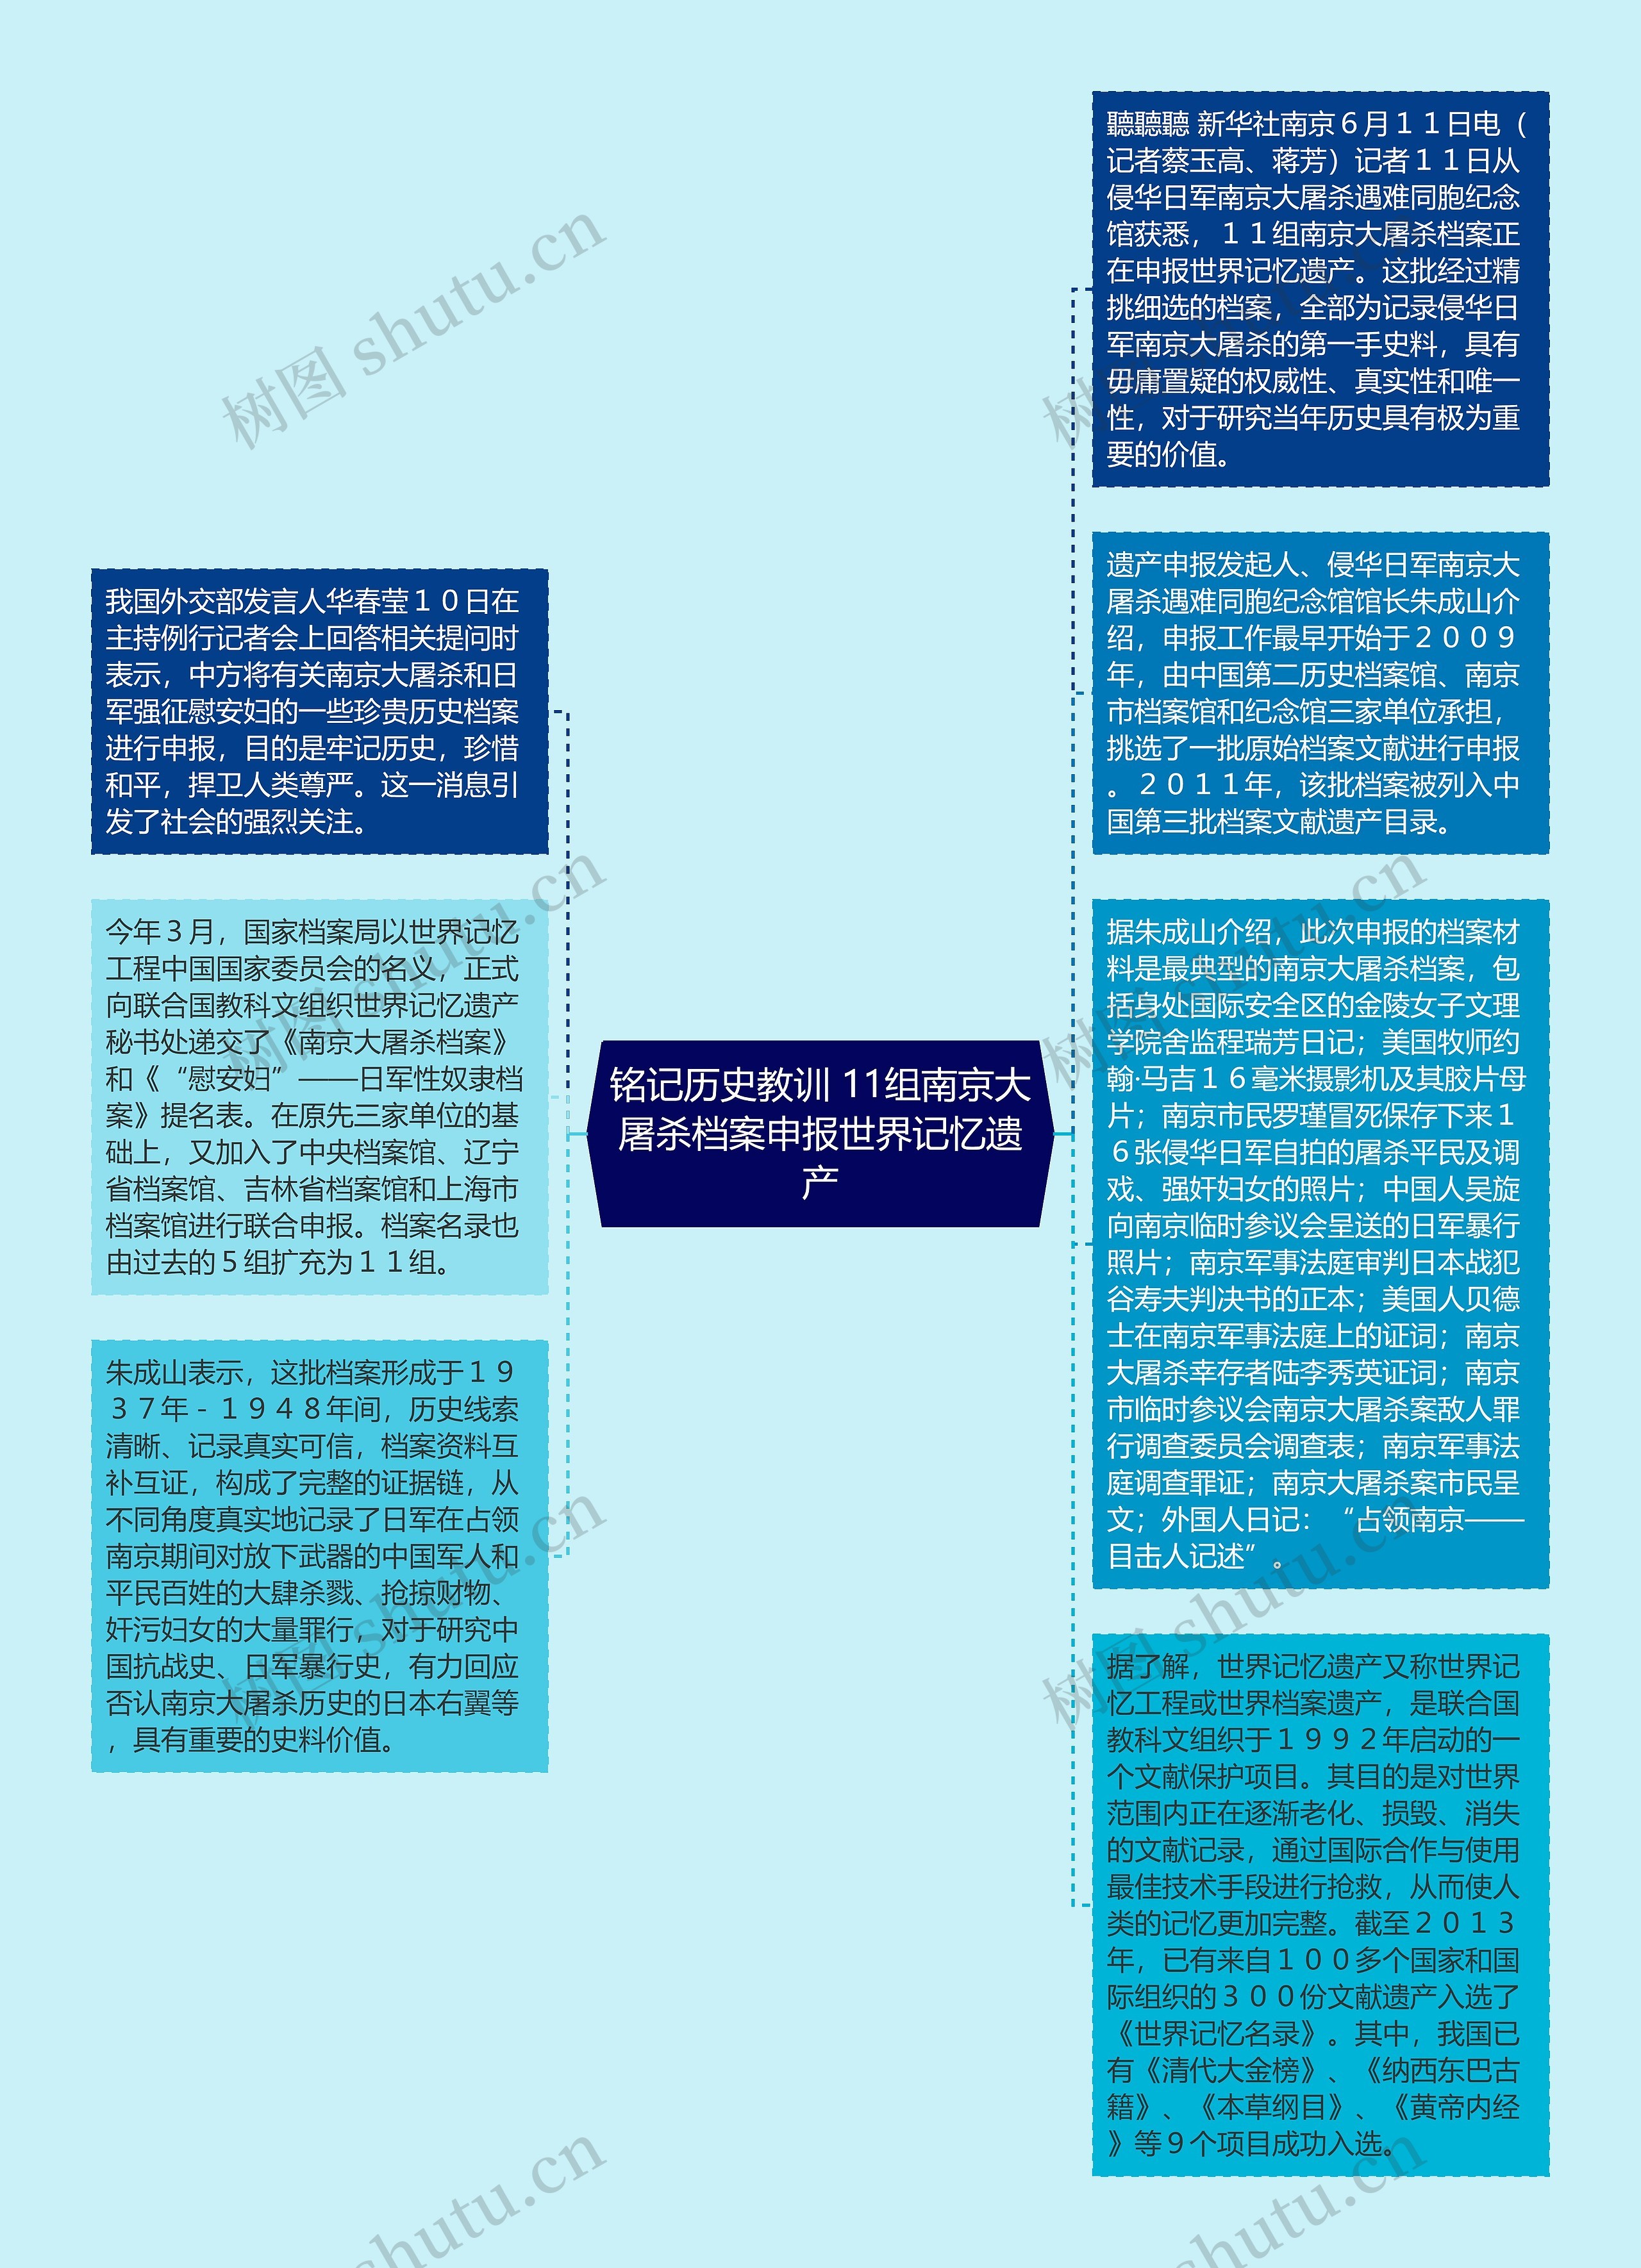 铭记历史教训 11组南京大屠杀档案申报世界记忆遗产思维导图